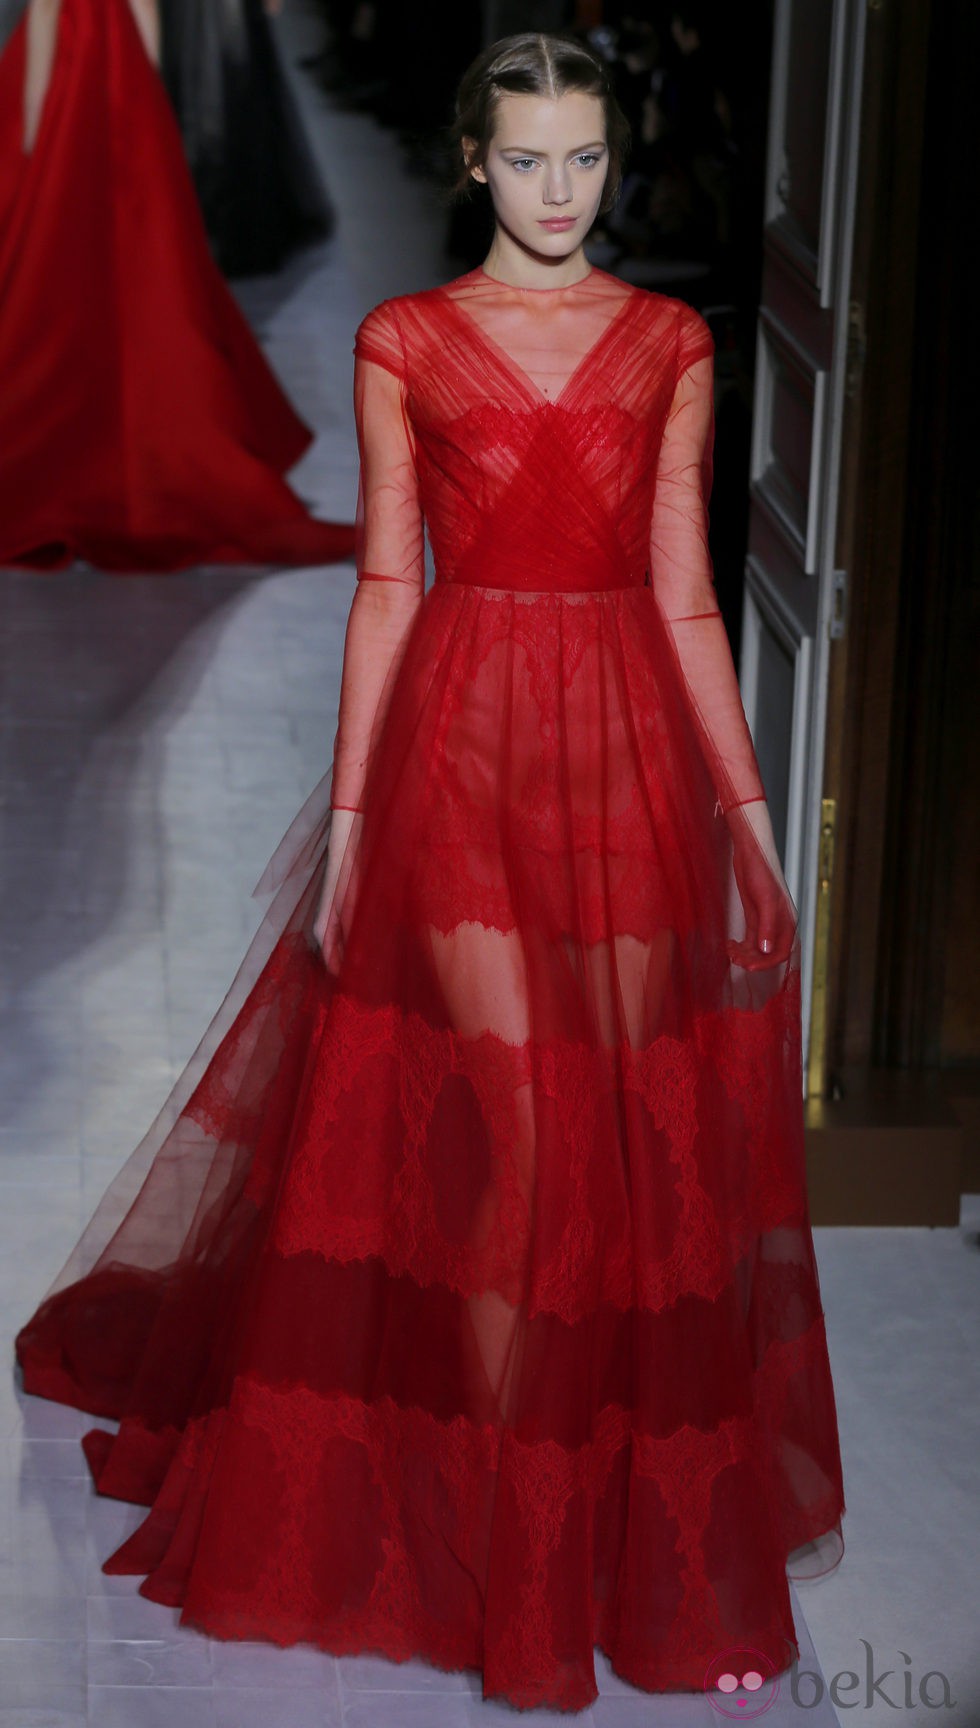 Vestido rojo de tul de la colección primavera/verano 2013 de Valentino en la Semana de la Alta Costura de París